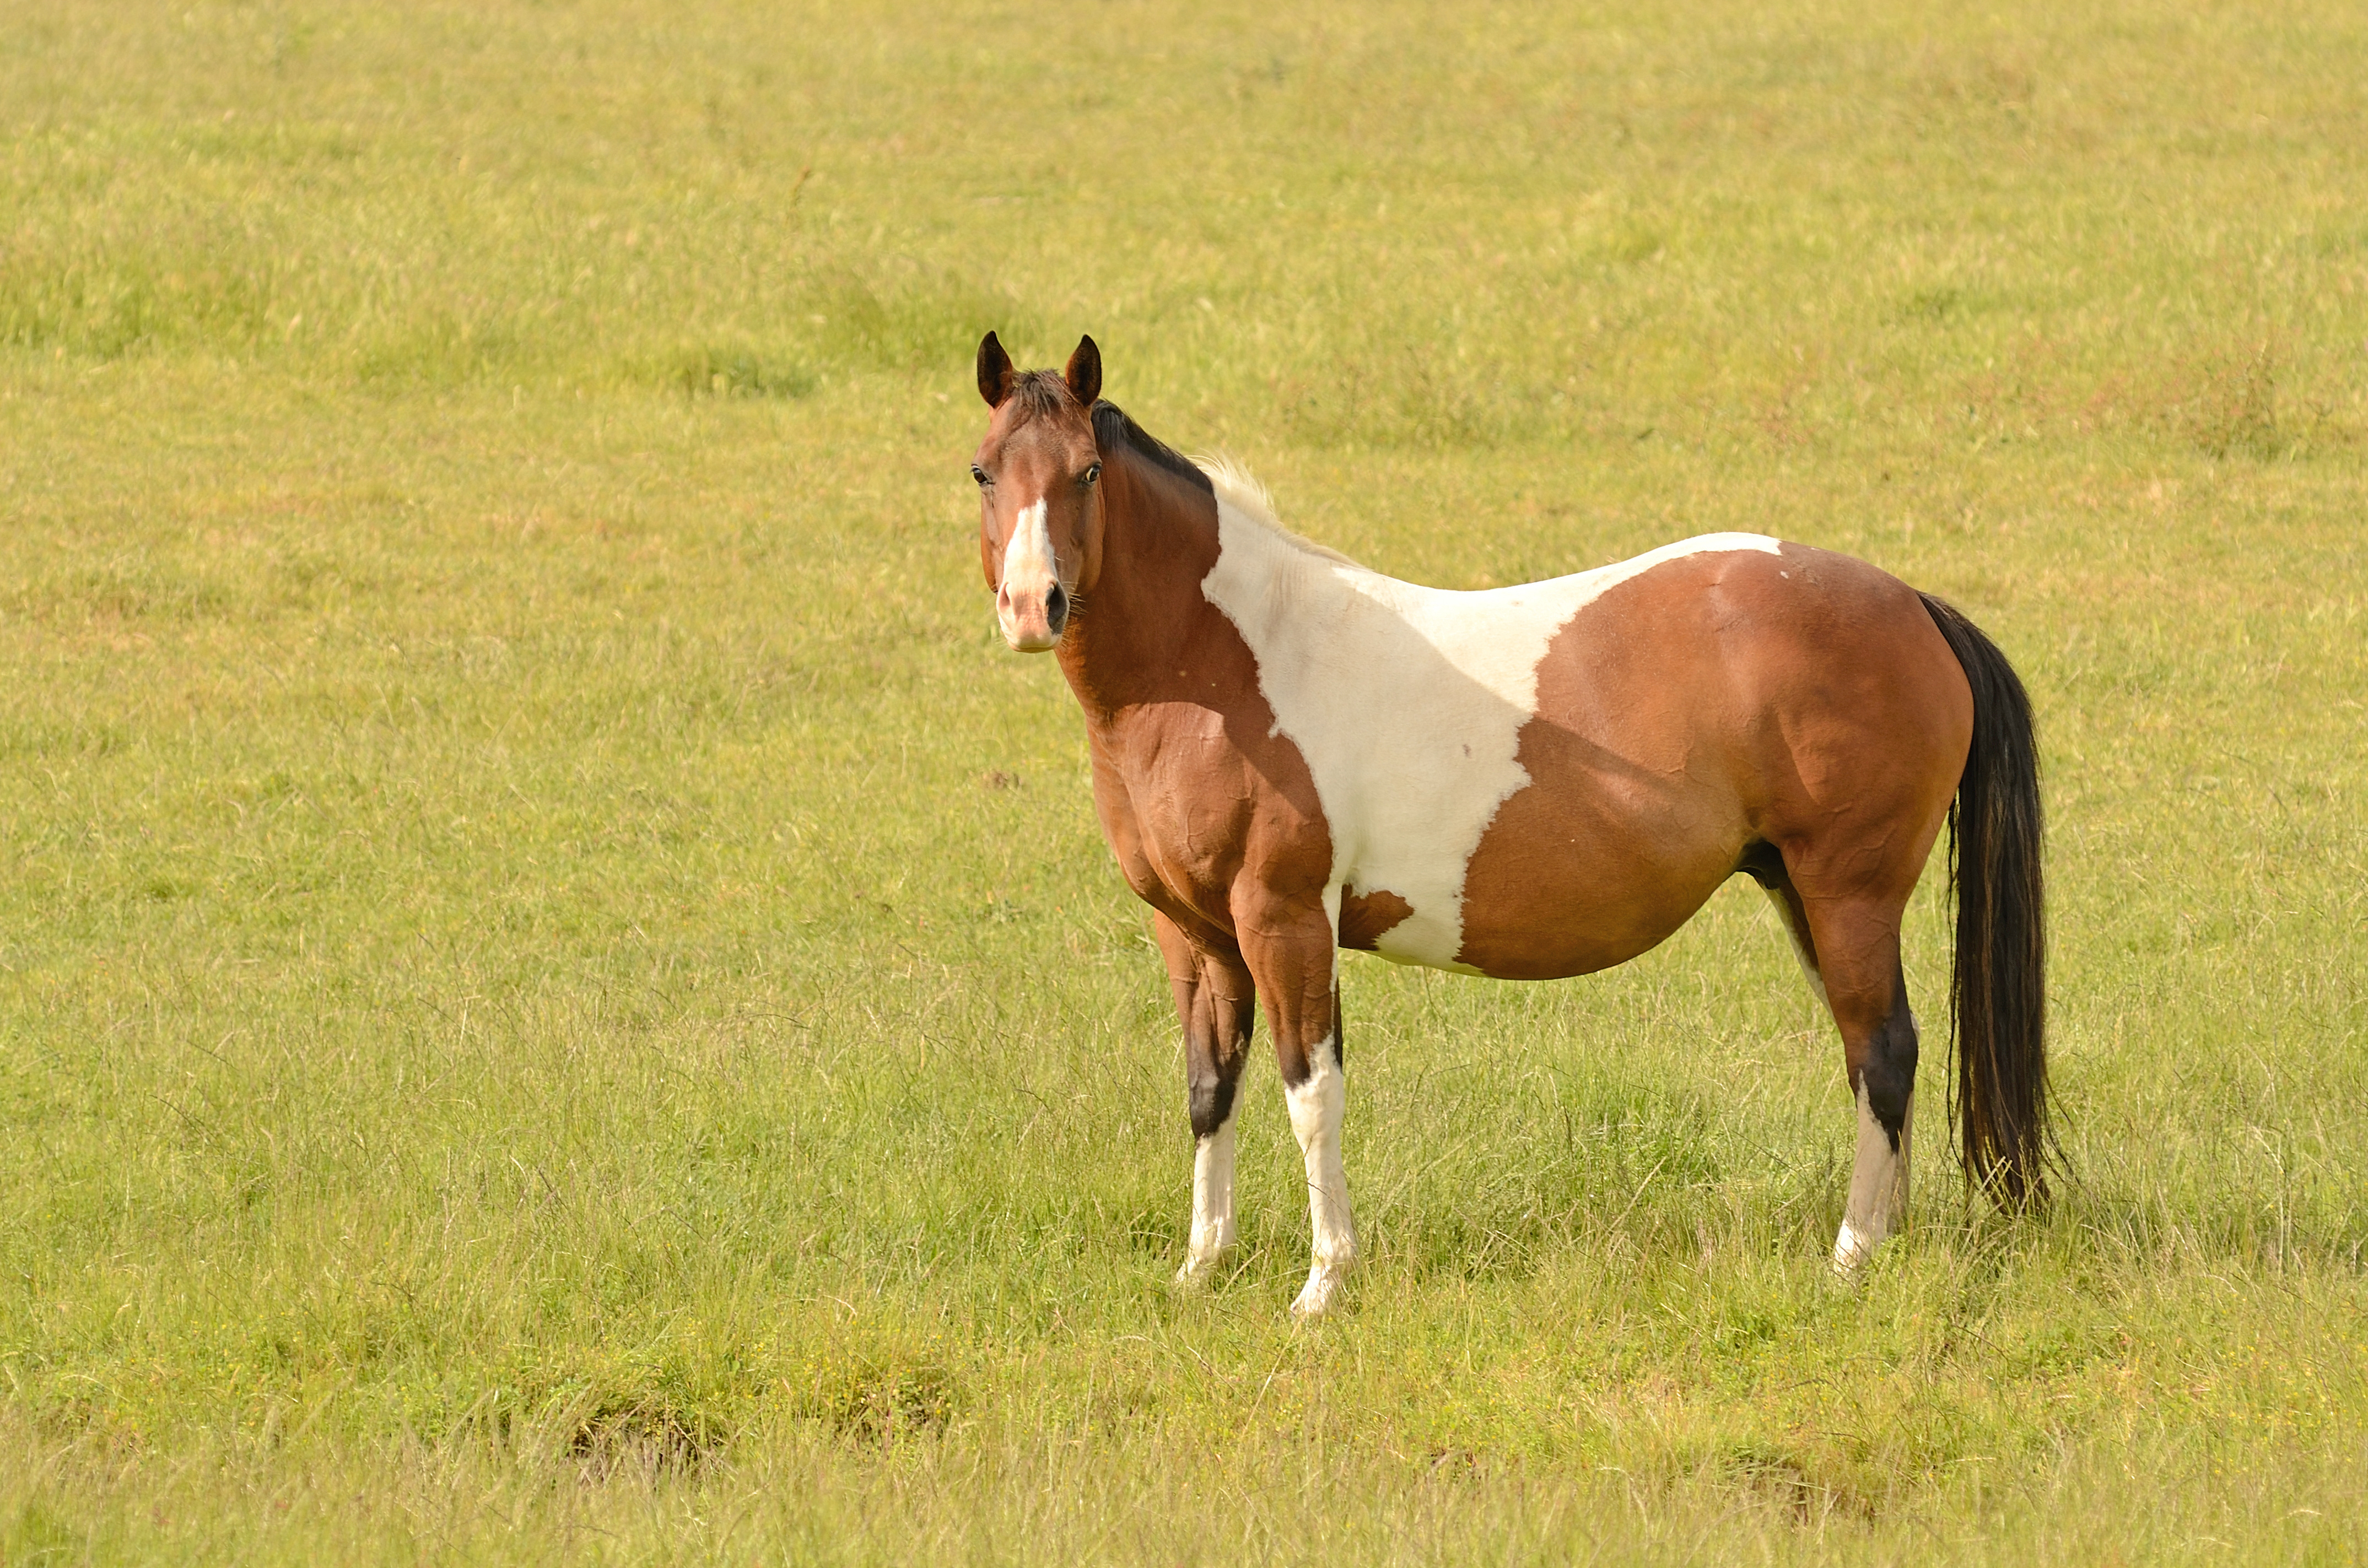 A mare in foal standing in a field. 